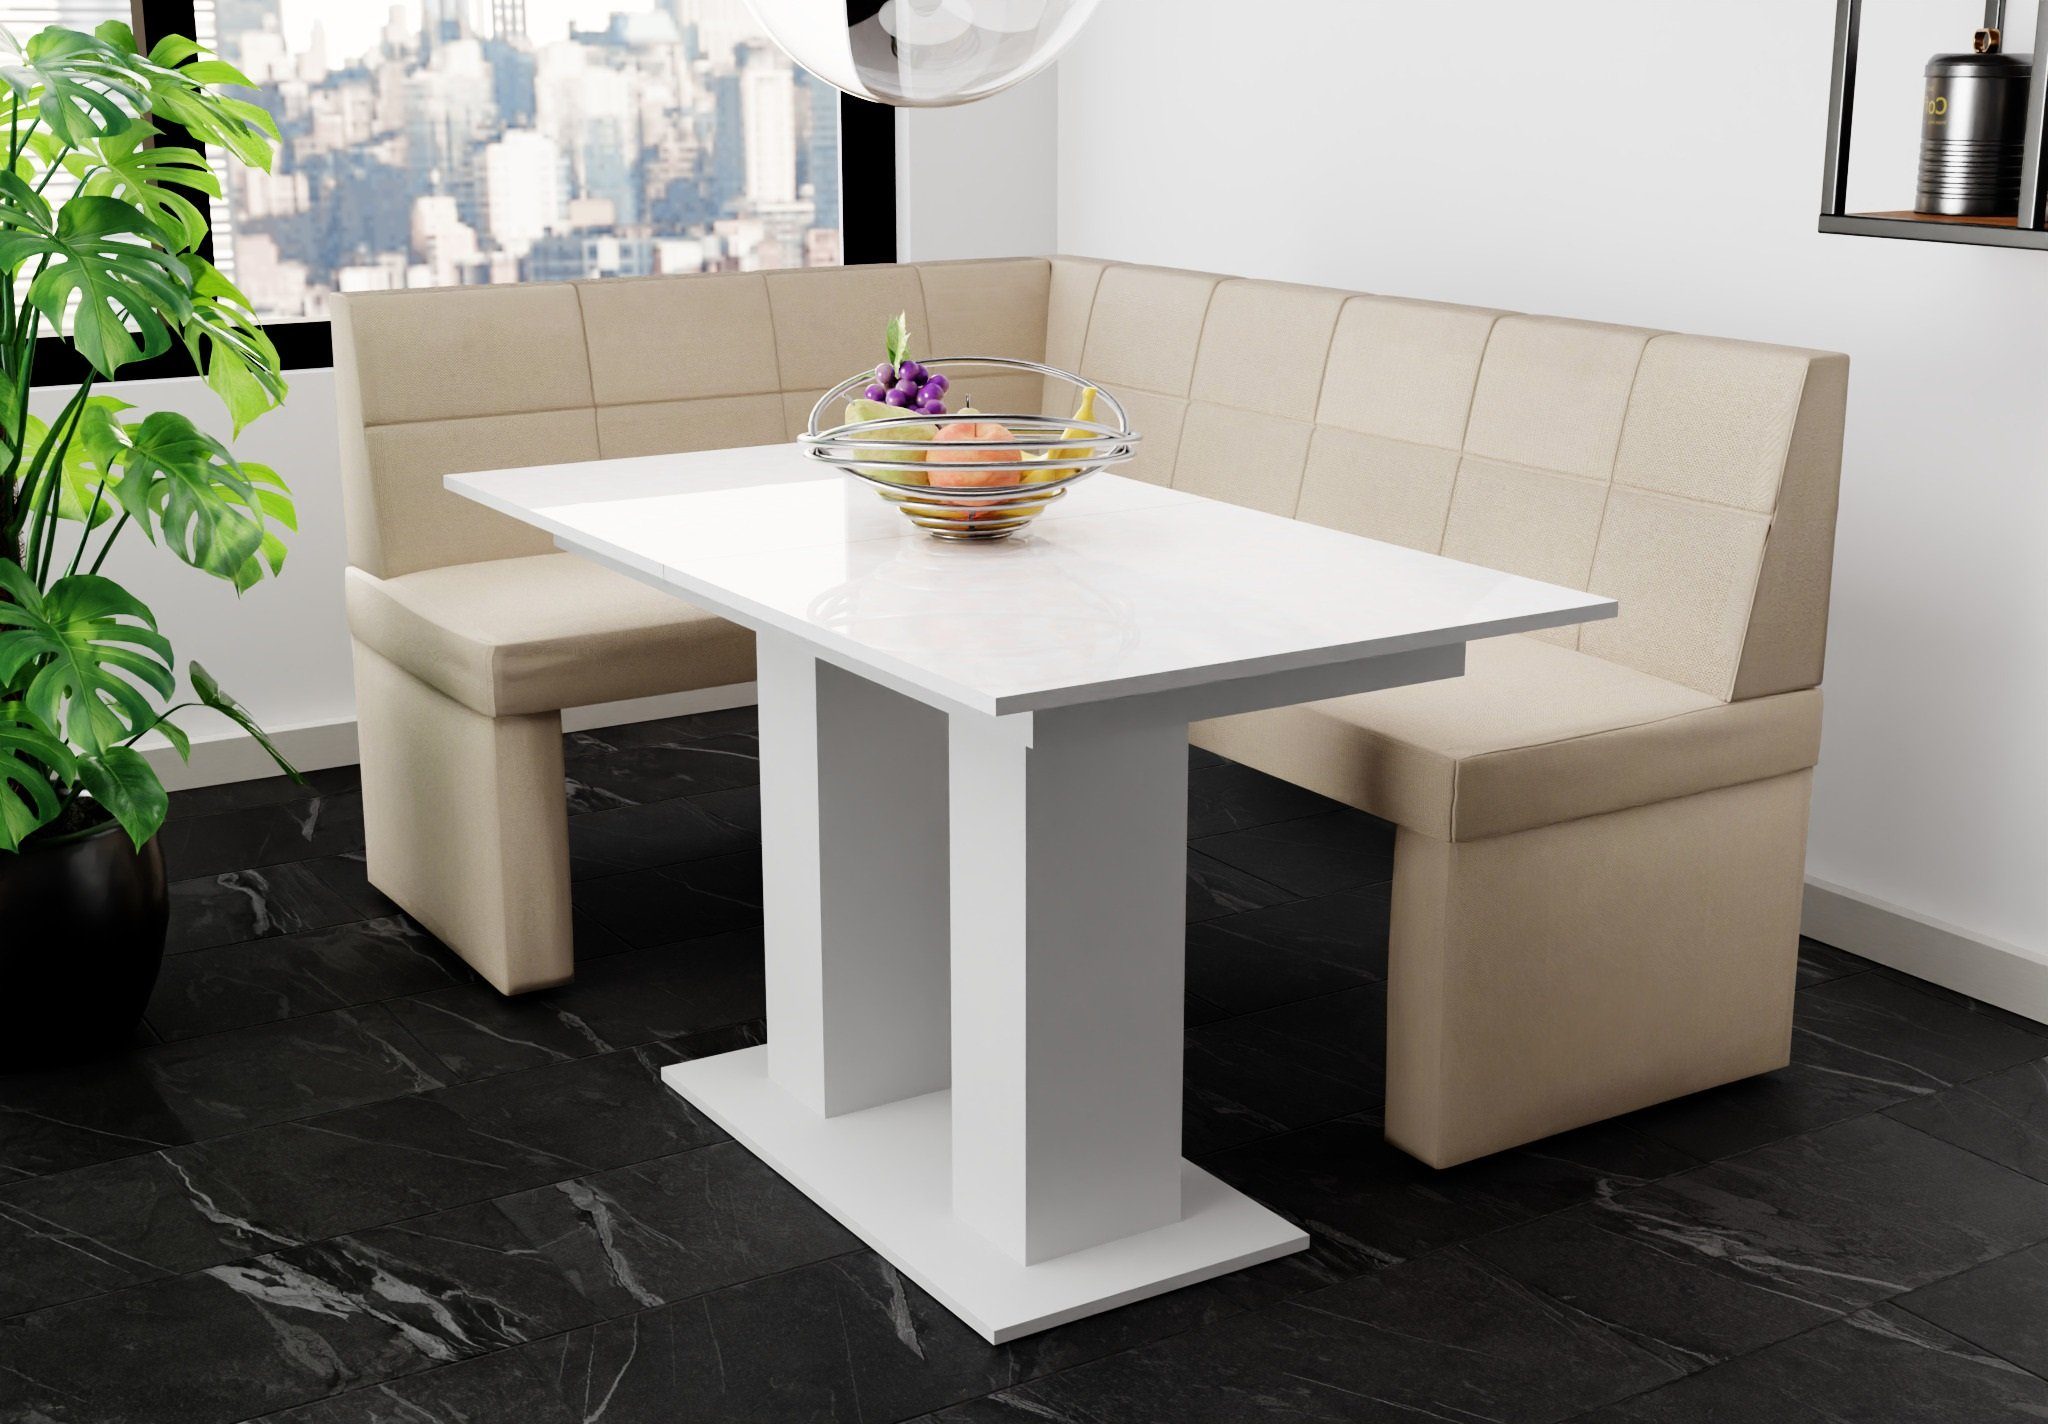 168x128cm Tisch Eckbankgruppe Hochglanz, Möbel Eckbankgruppe Weiß Tisch ausziehbarer „BLAKE“ Fun Größe mit